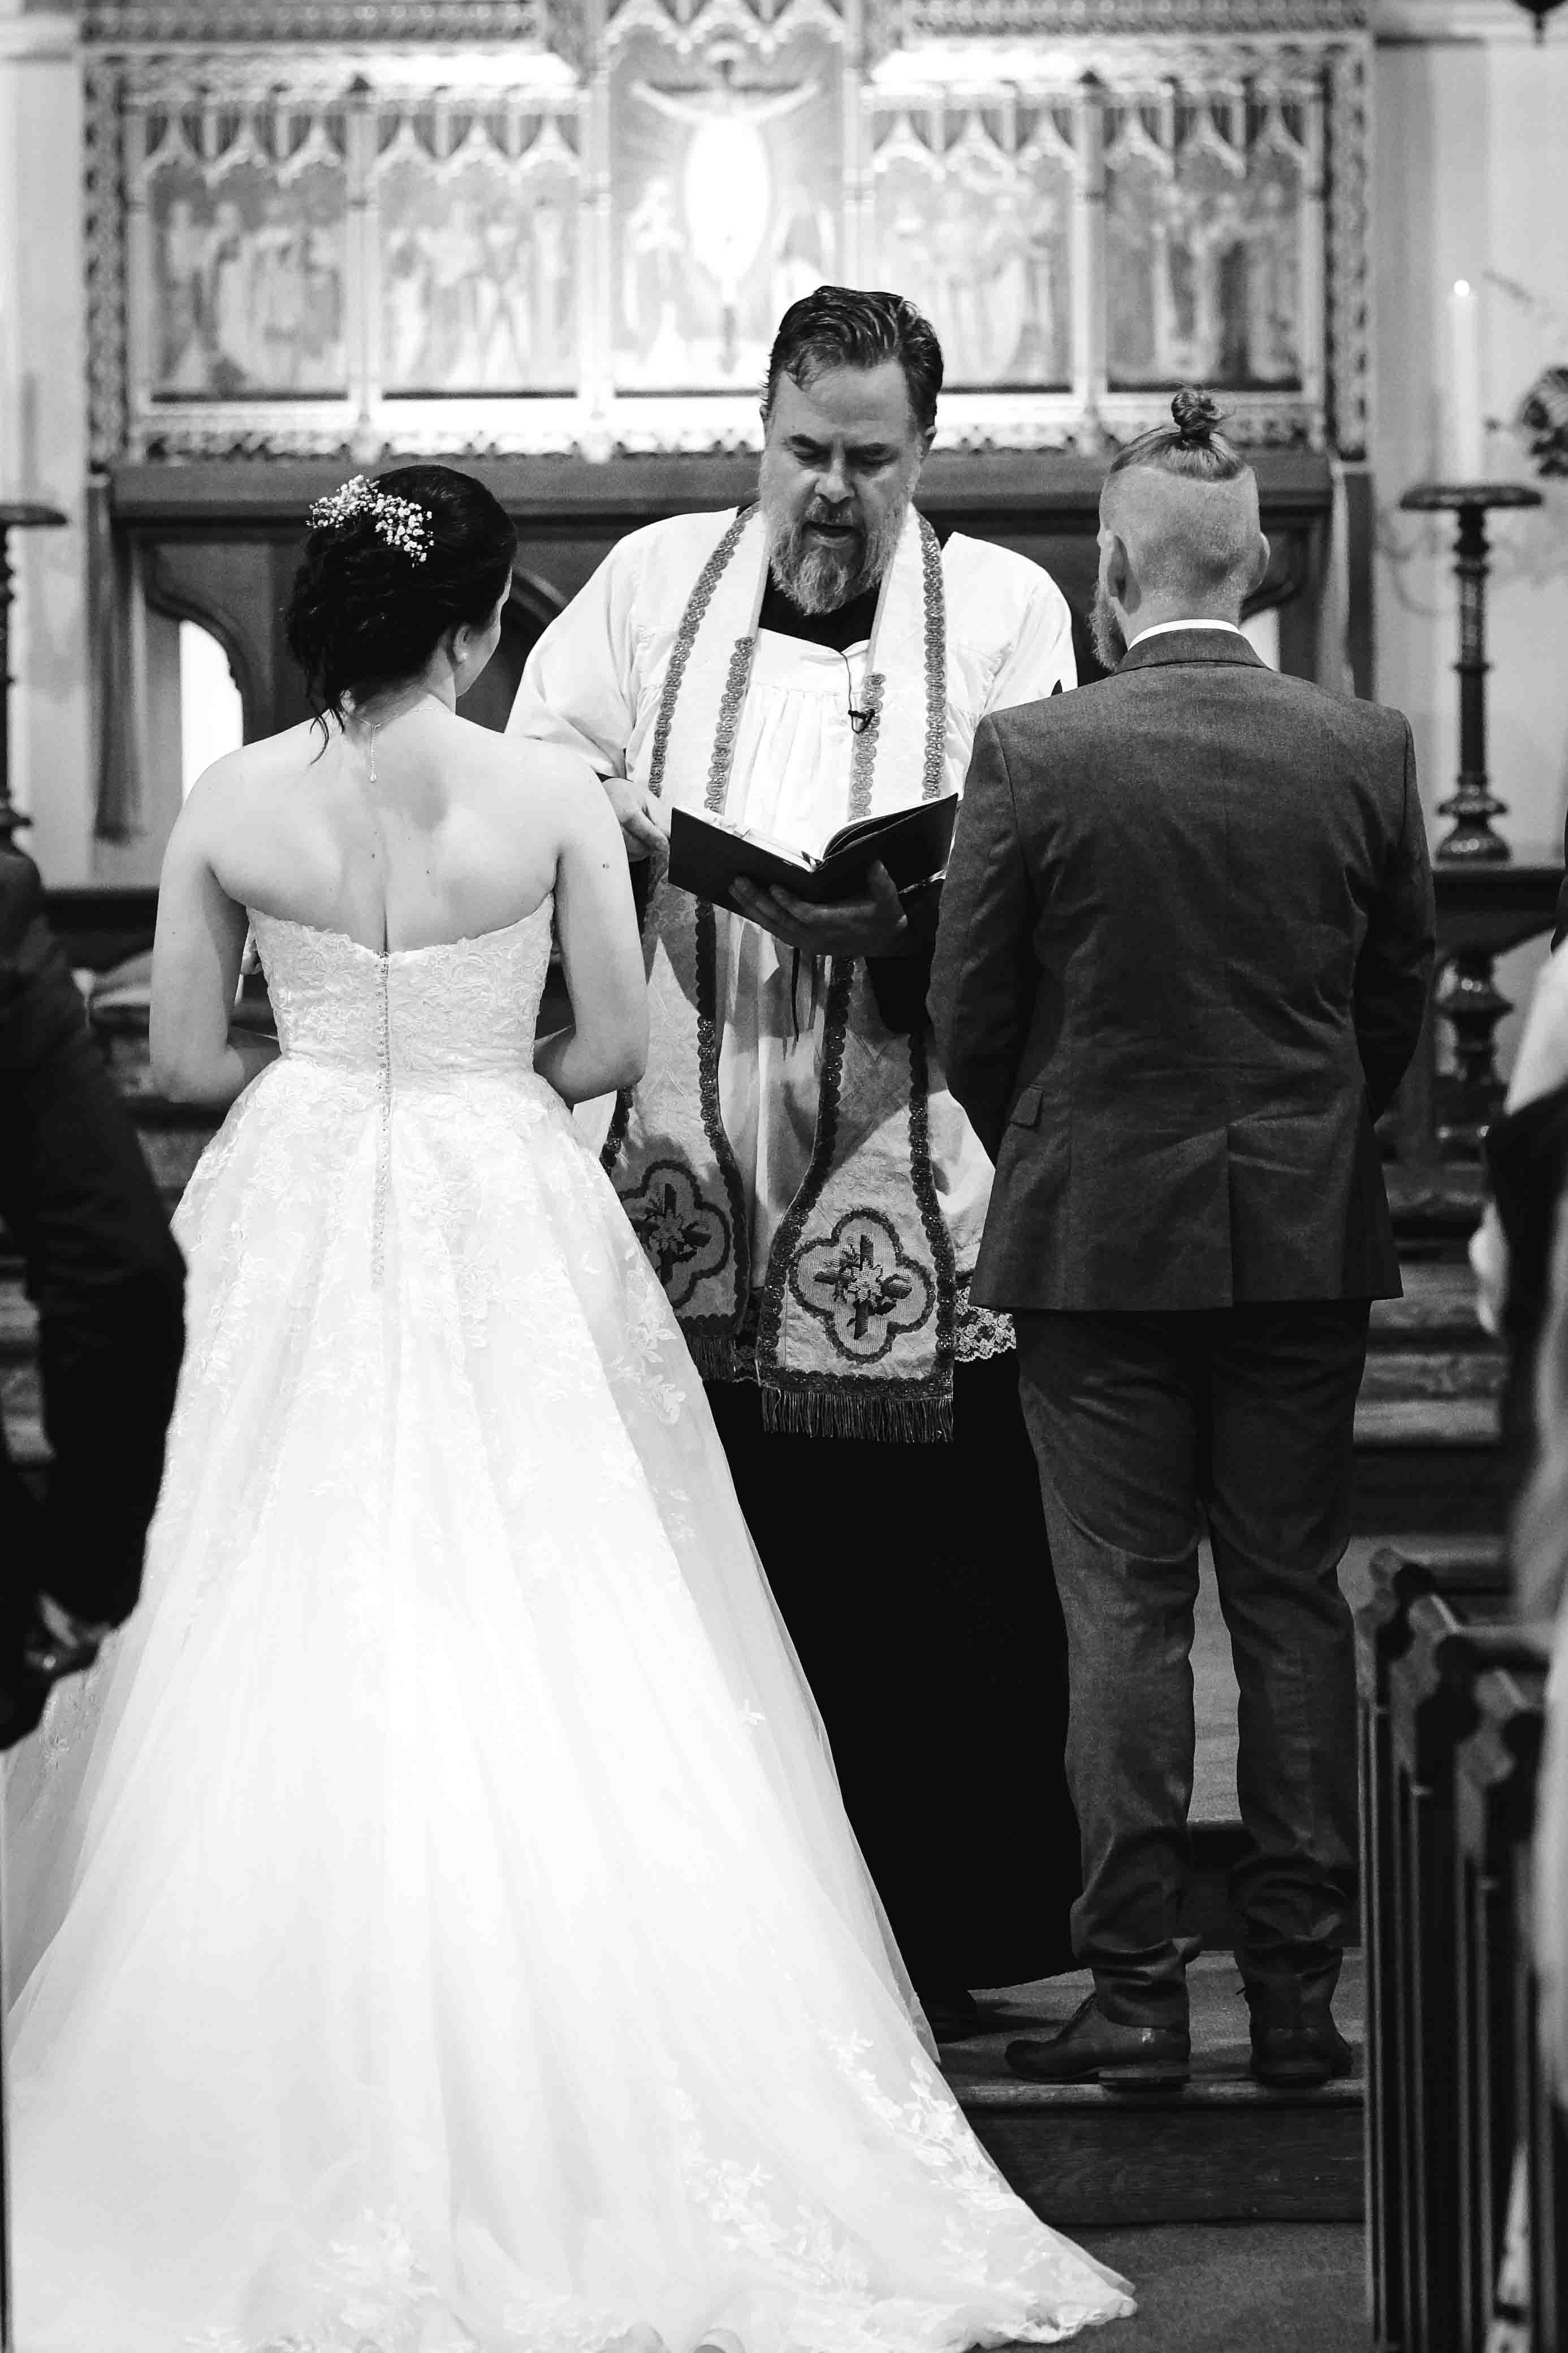 A wedding at St Mary's Twyford